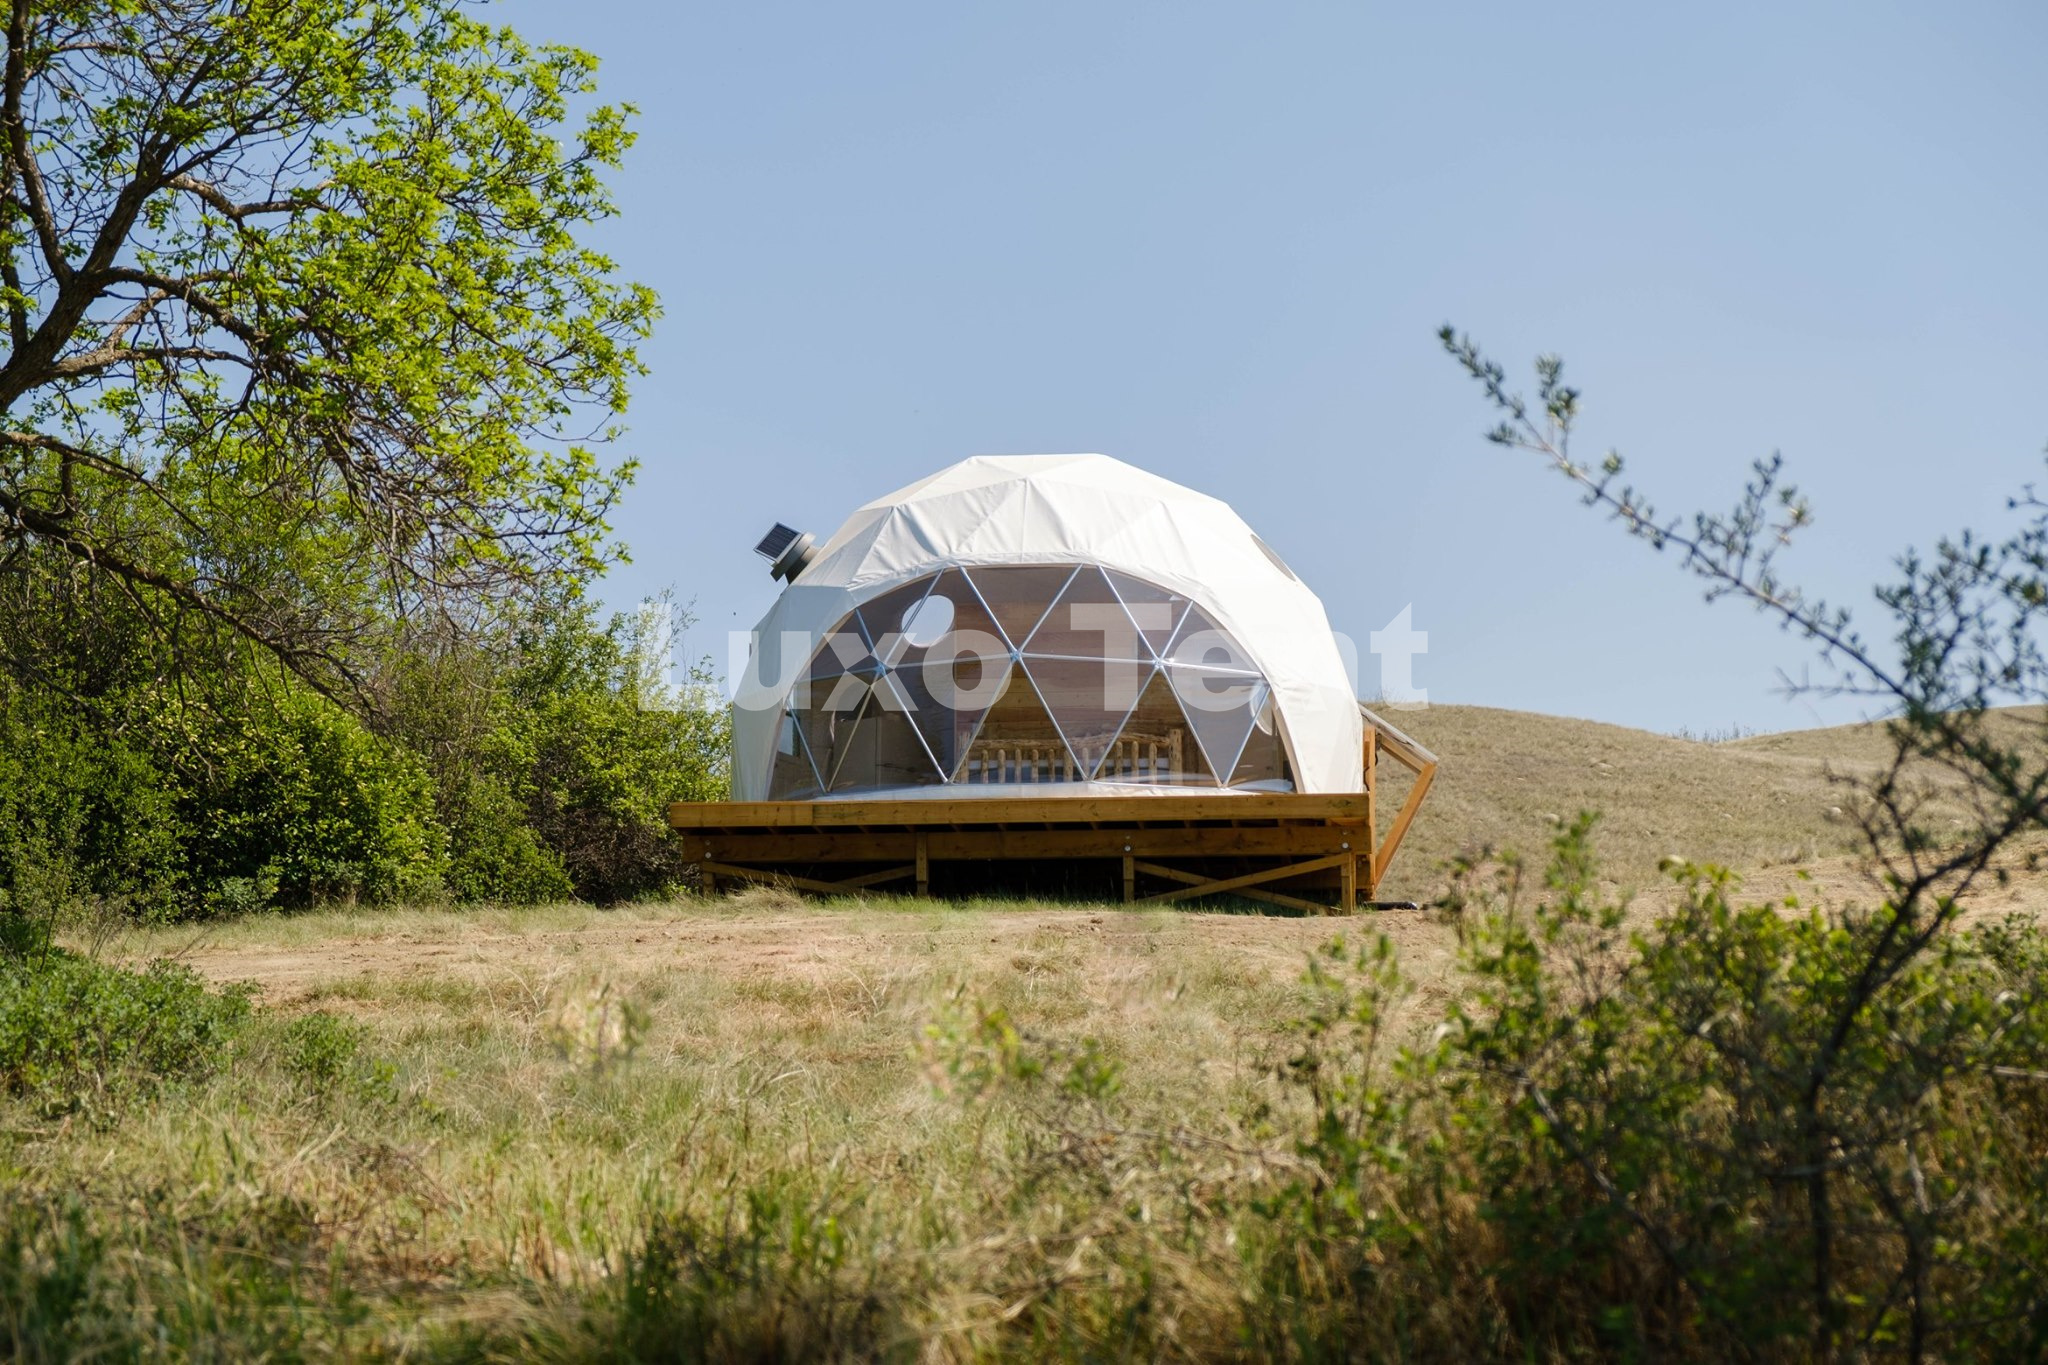 خيمة على شكل قبة جيوديسية بطول 5 أمتار مع مروحة عادم تعمل بالطاقة الشمسية